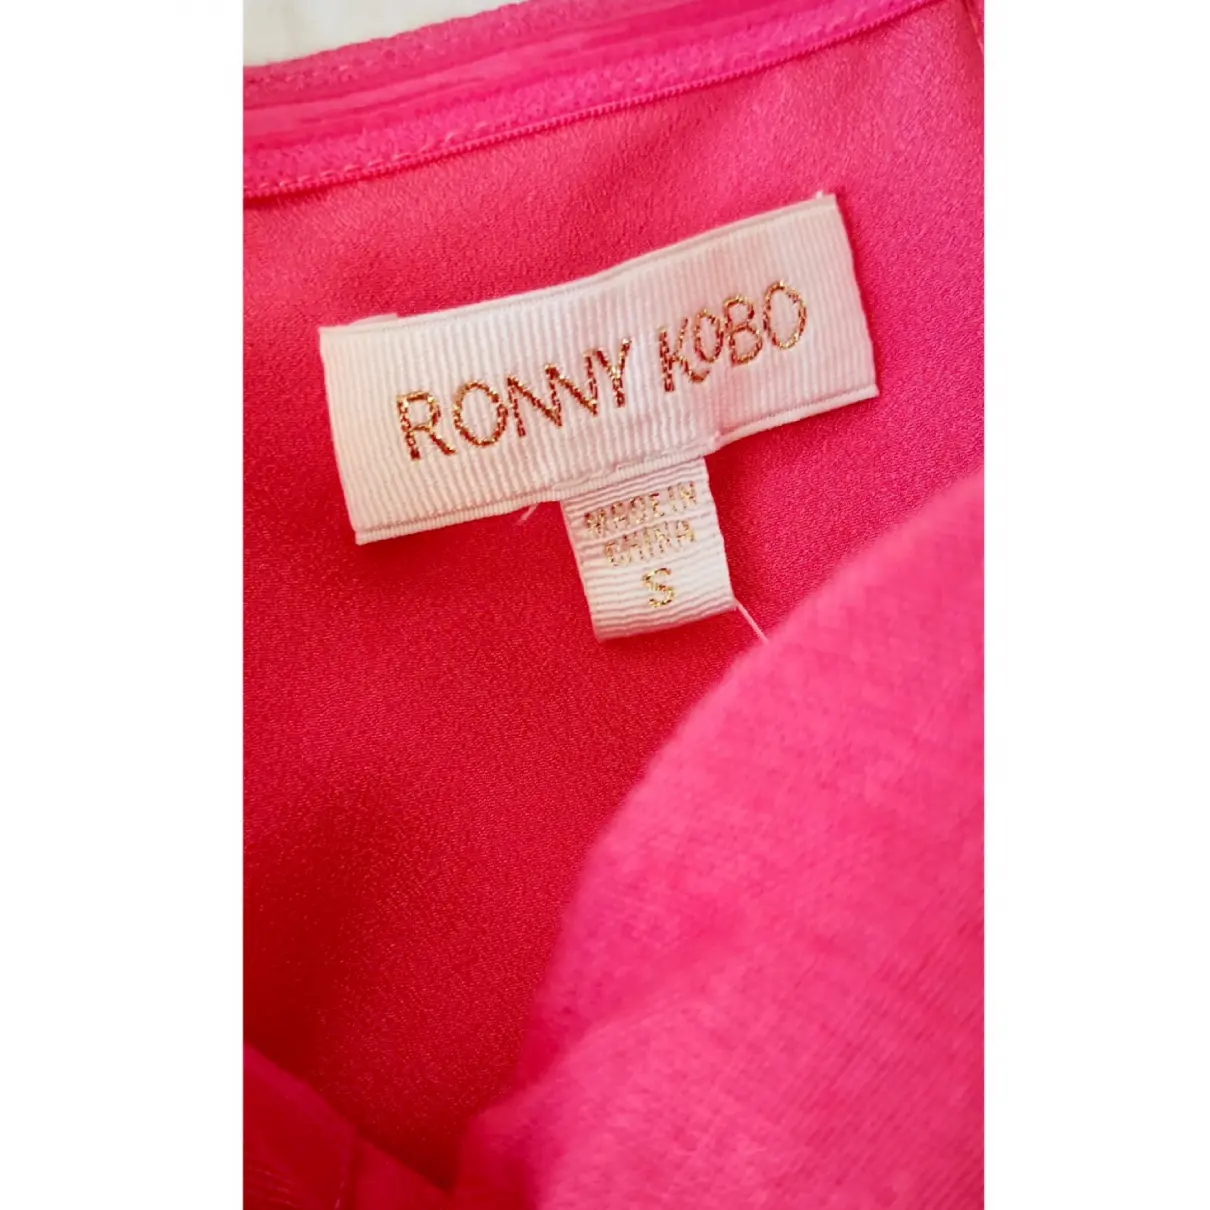 Linen mid-length dress Ronny Kobo